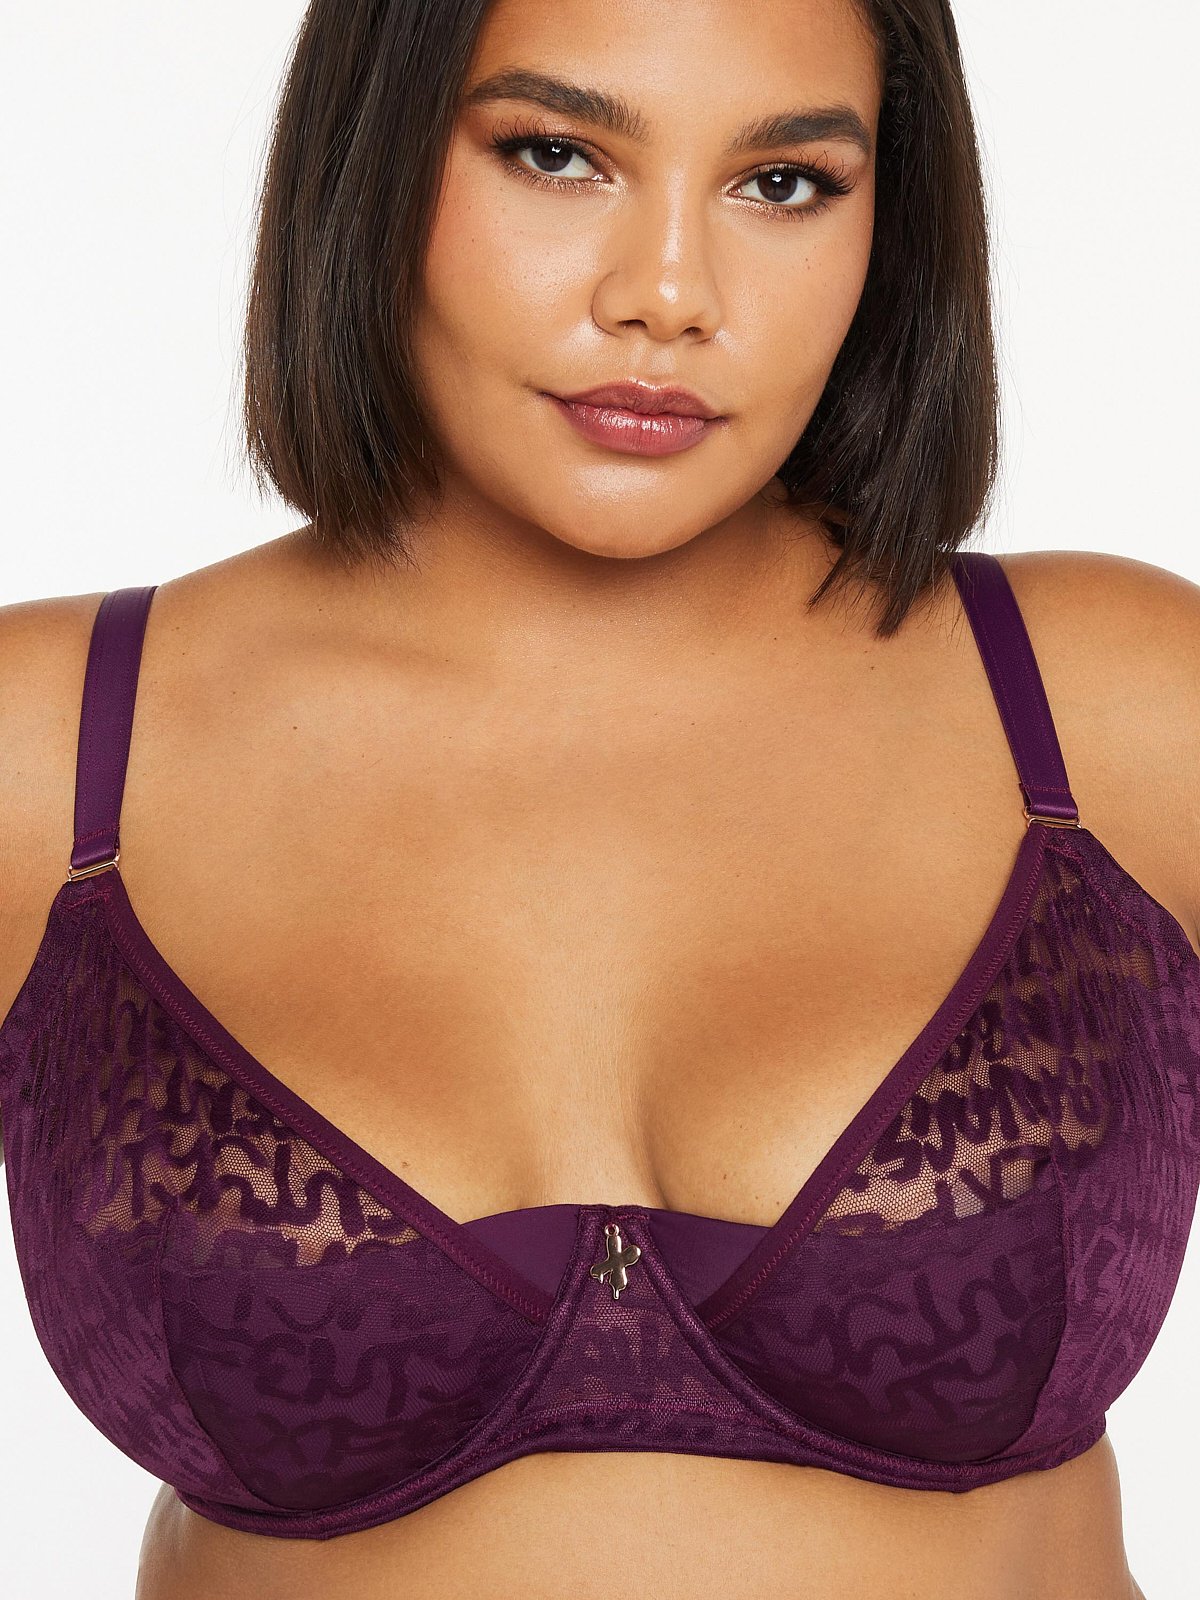 8134, detachable bra straps, Sexy breast bra, Purple, 32A cup size